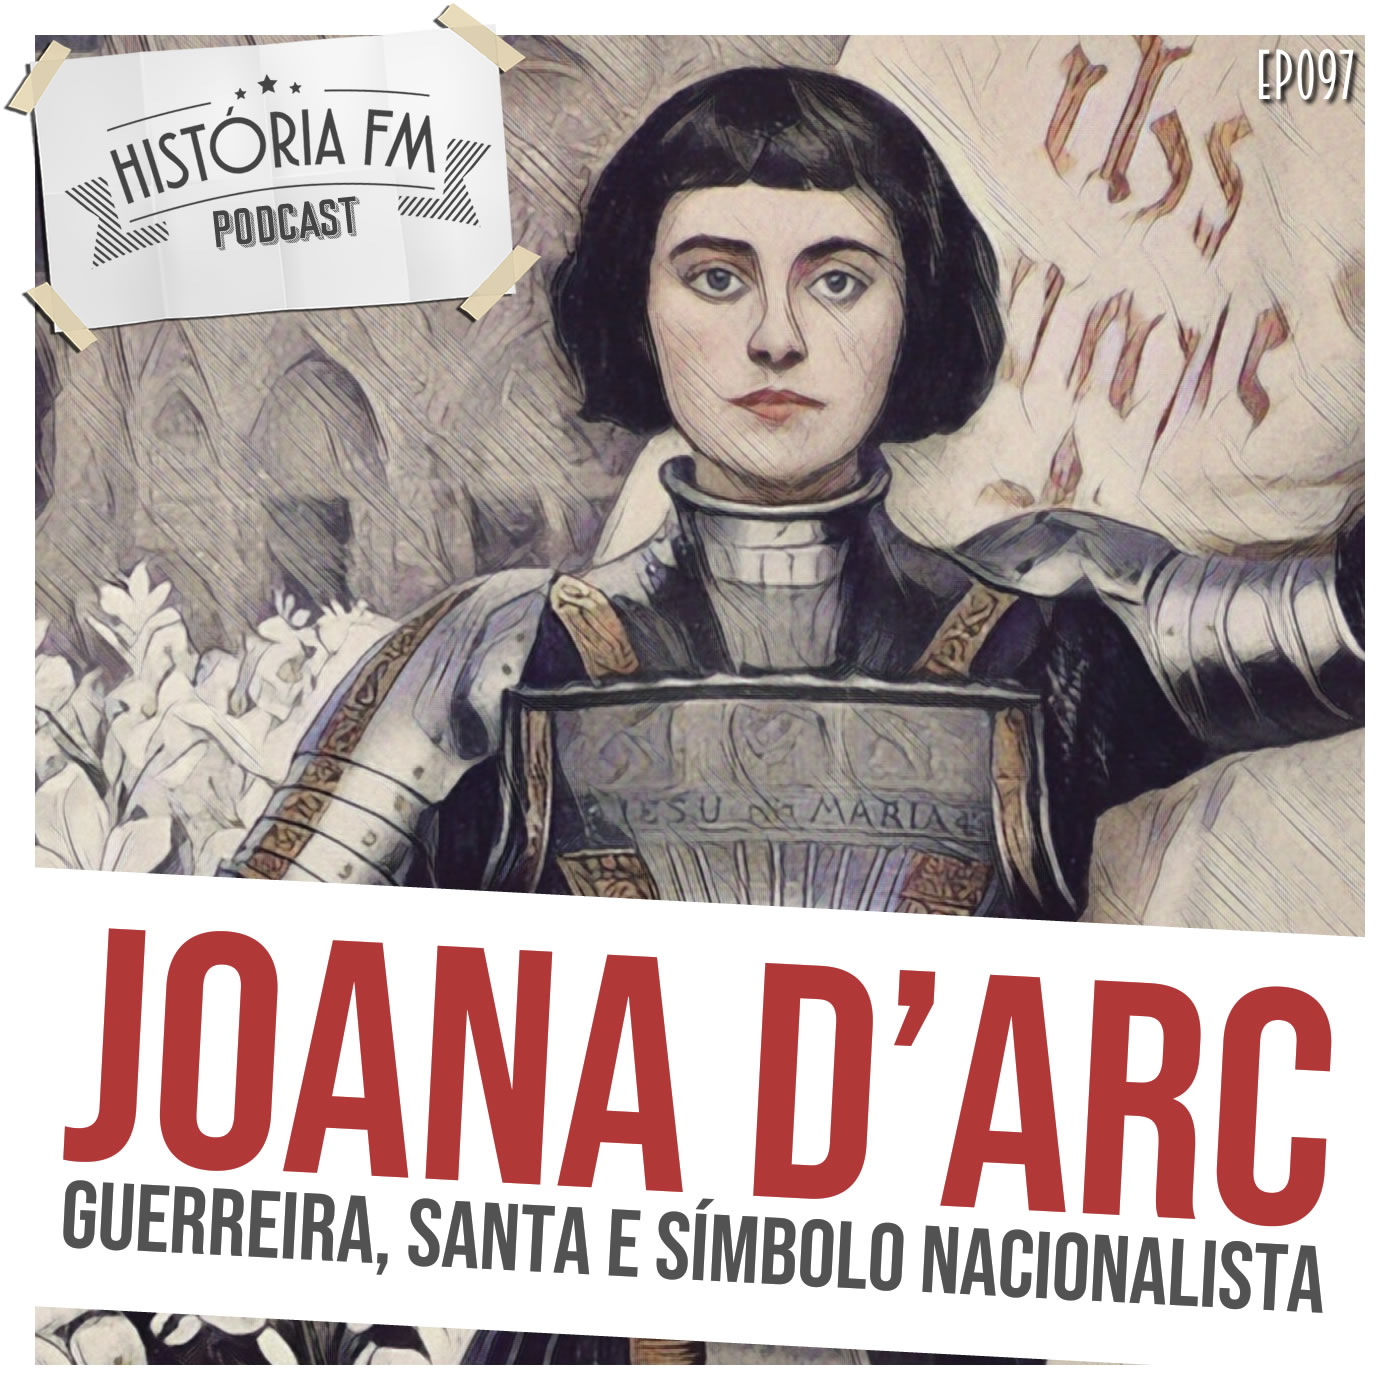 Joana D’Arc: guerreira, santa e símbolo nacionalista